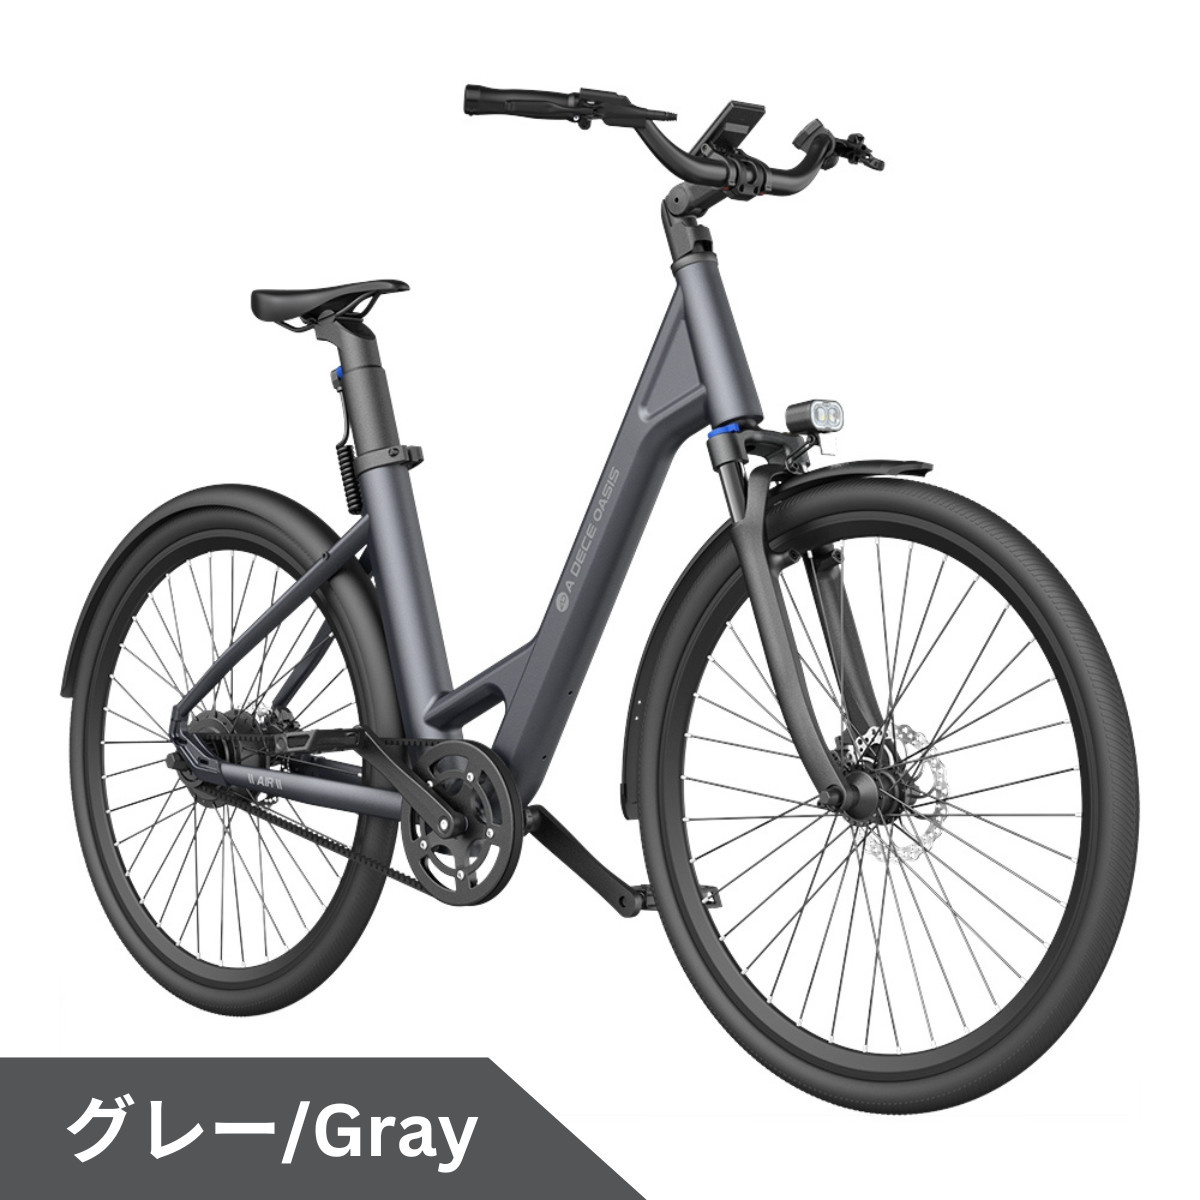 ADO Air28 ★電動アシスト自転車【試乗可能】